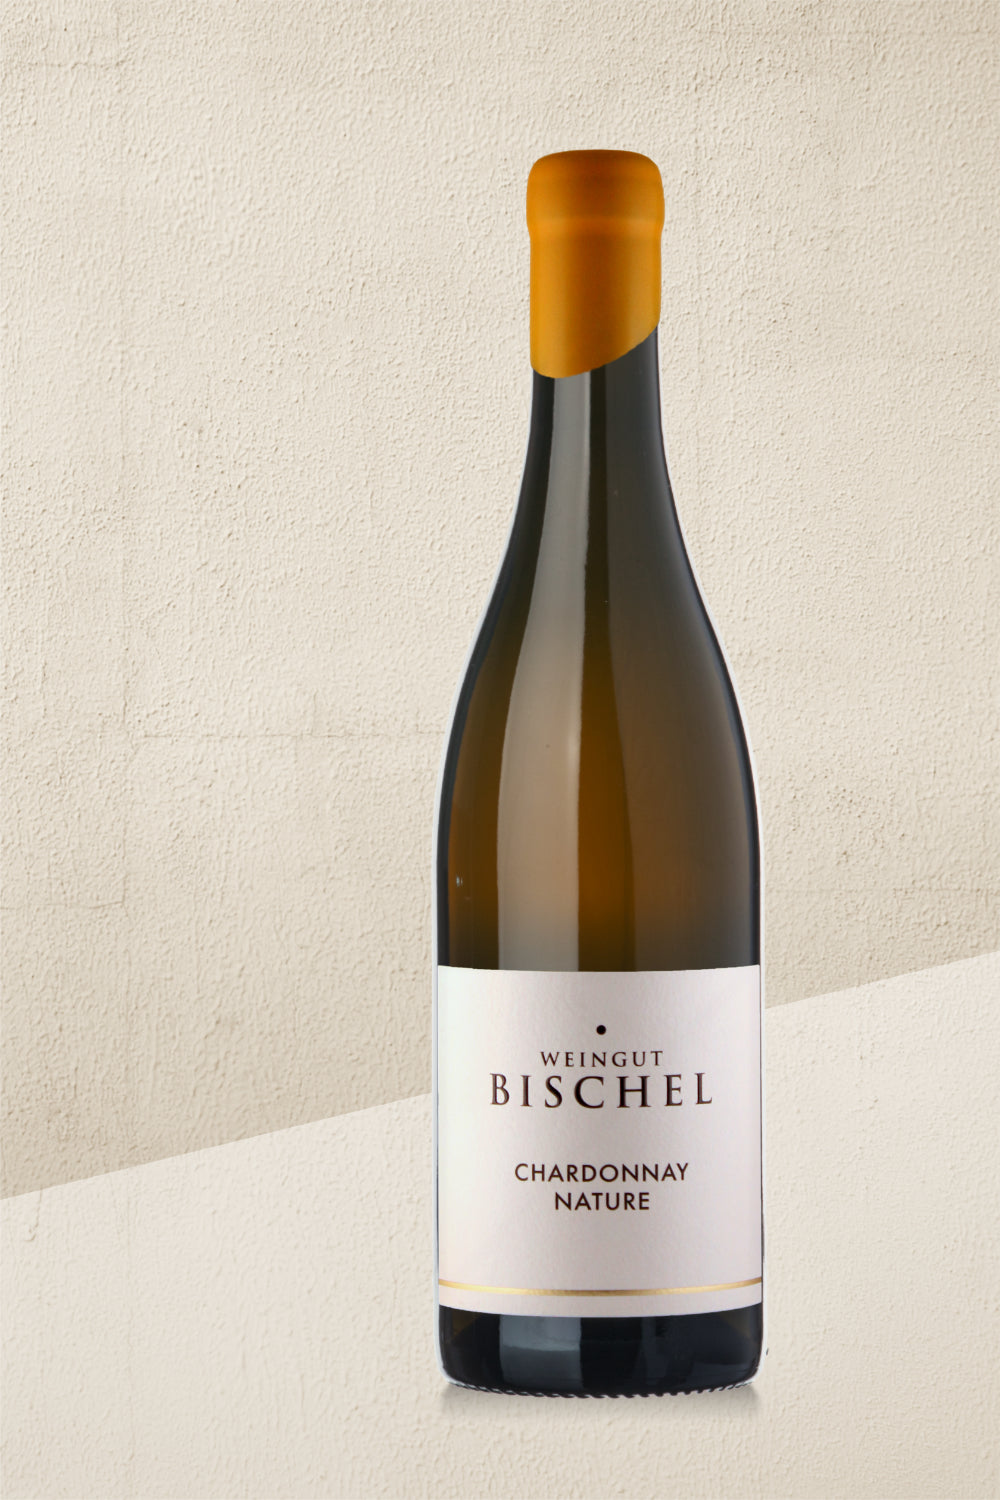 Bischel Chardonnay Nature